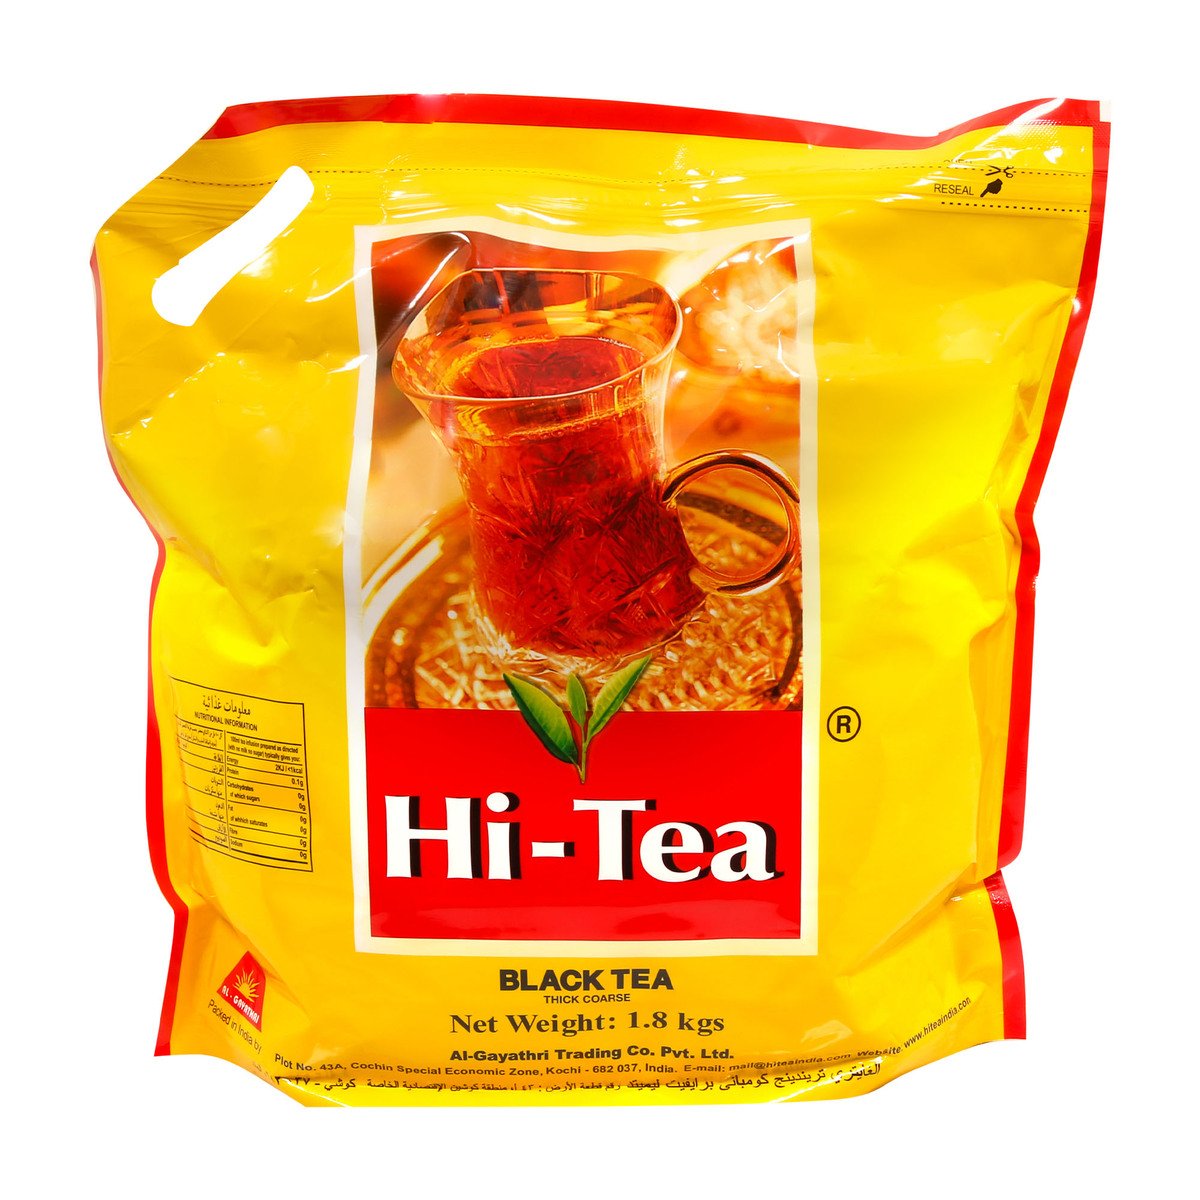 Hi-Tea Black Tea Powder 1.8kg